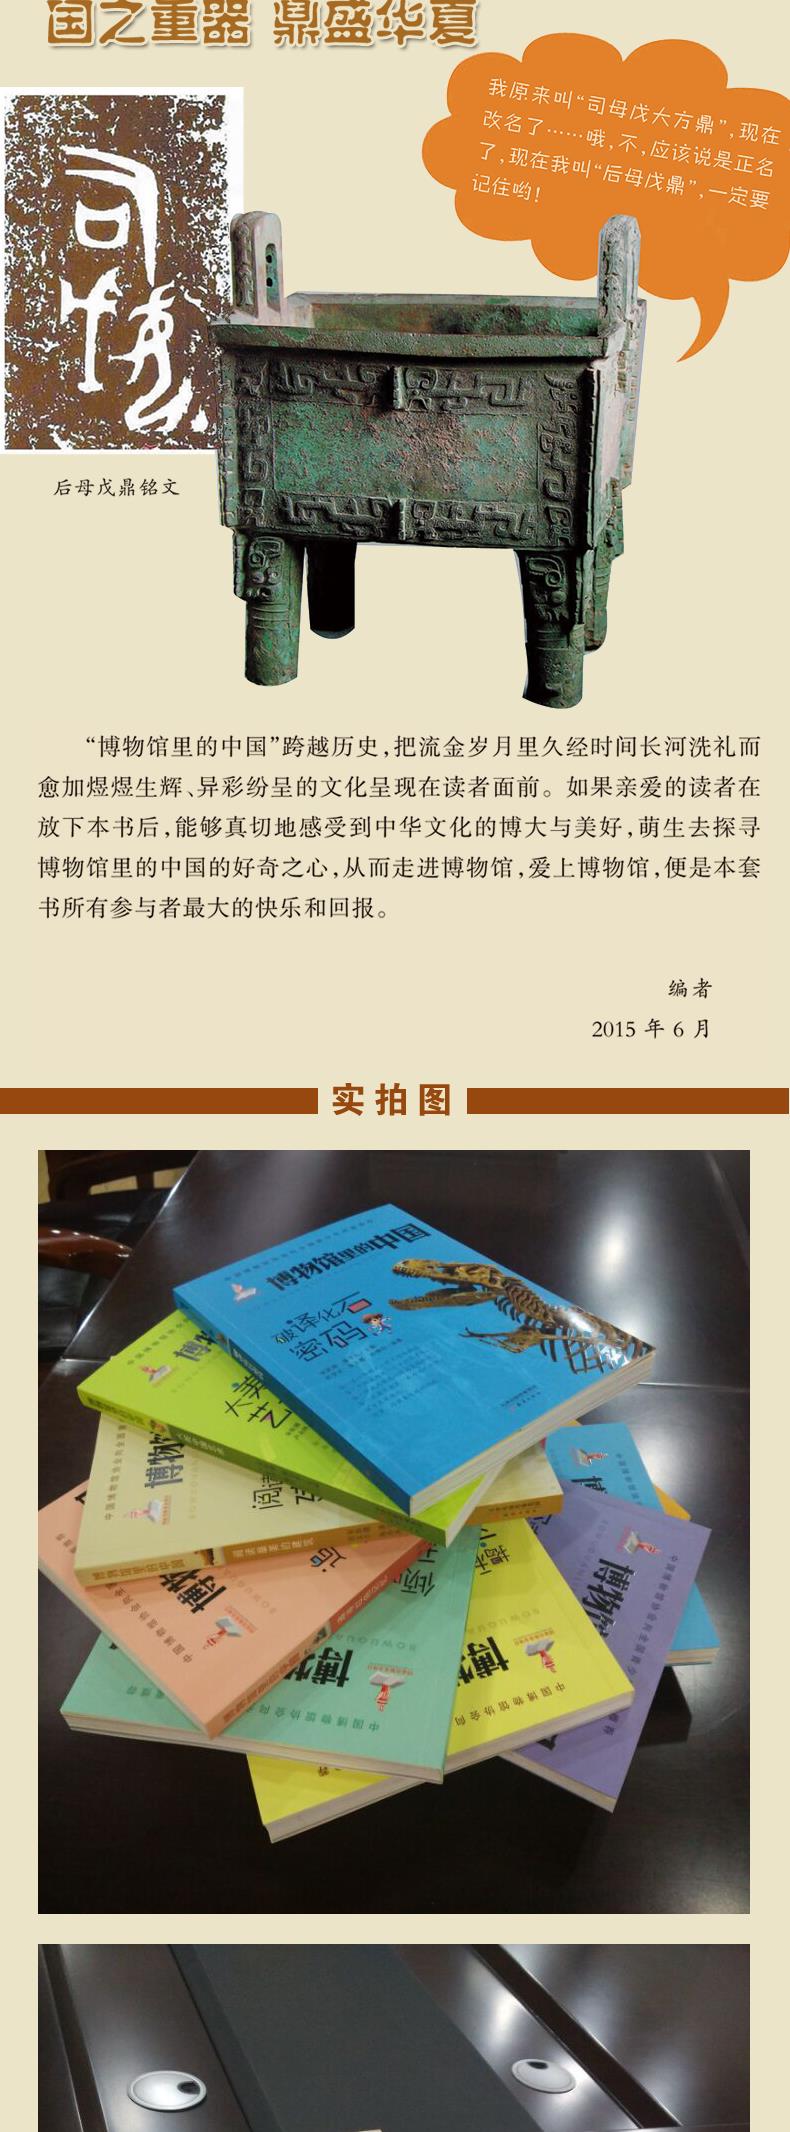 博物馆里的中国系列全套10册7 10岁青少年科普百科读物全书小学生课外阅读书籍 摘要书评试读 京东图书